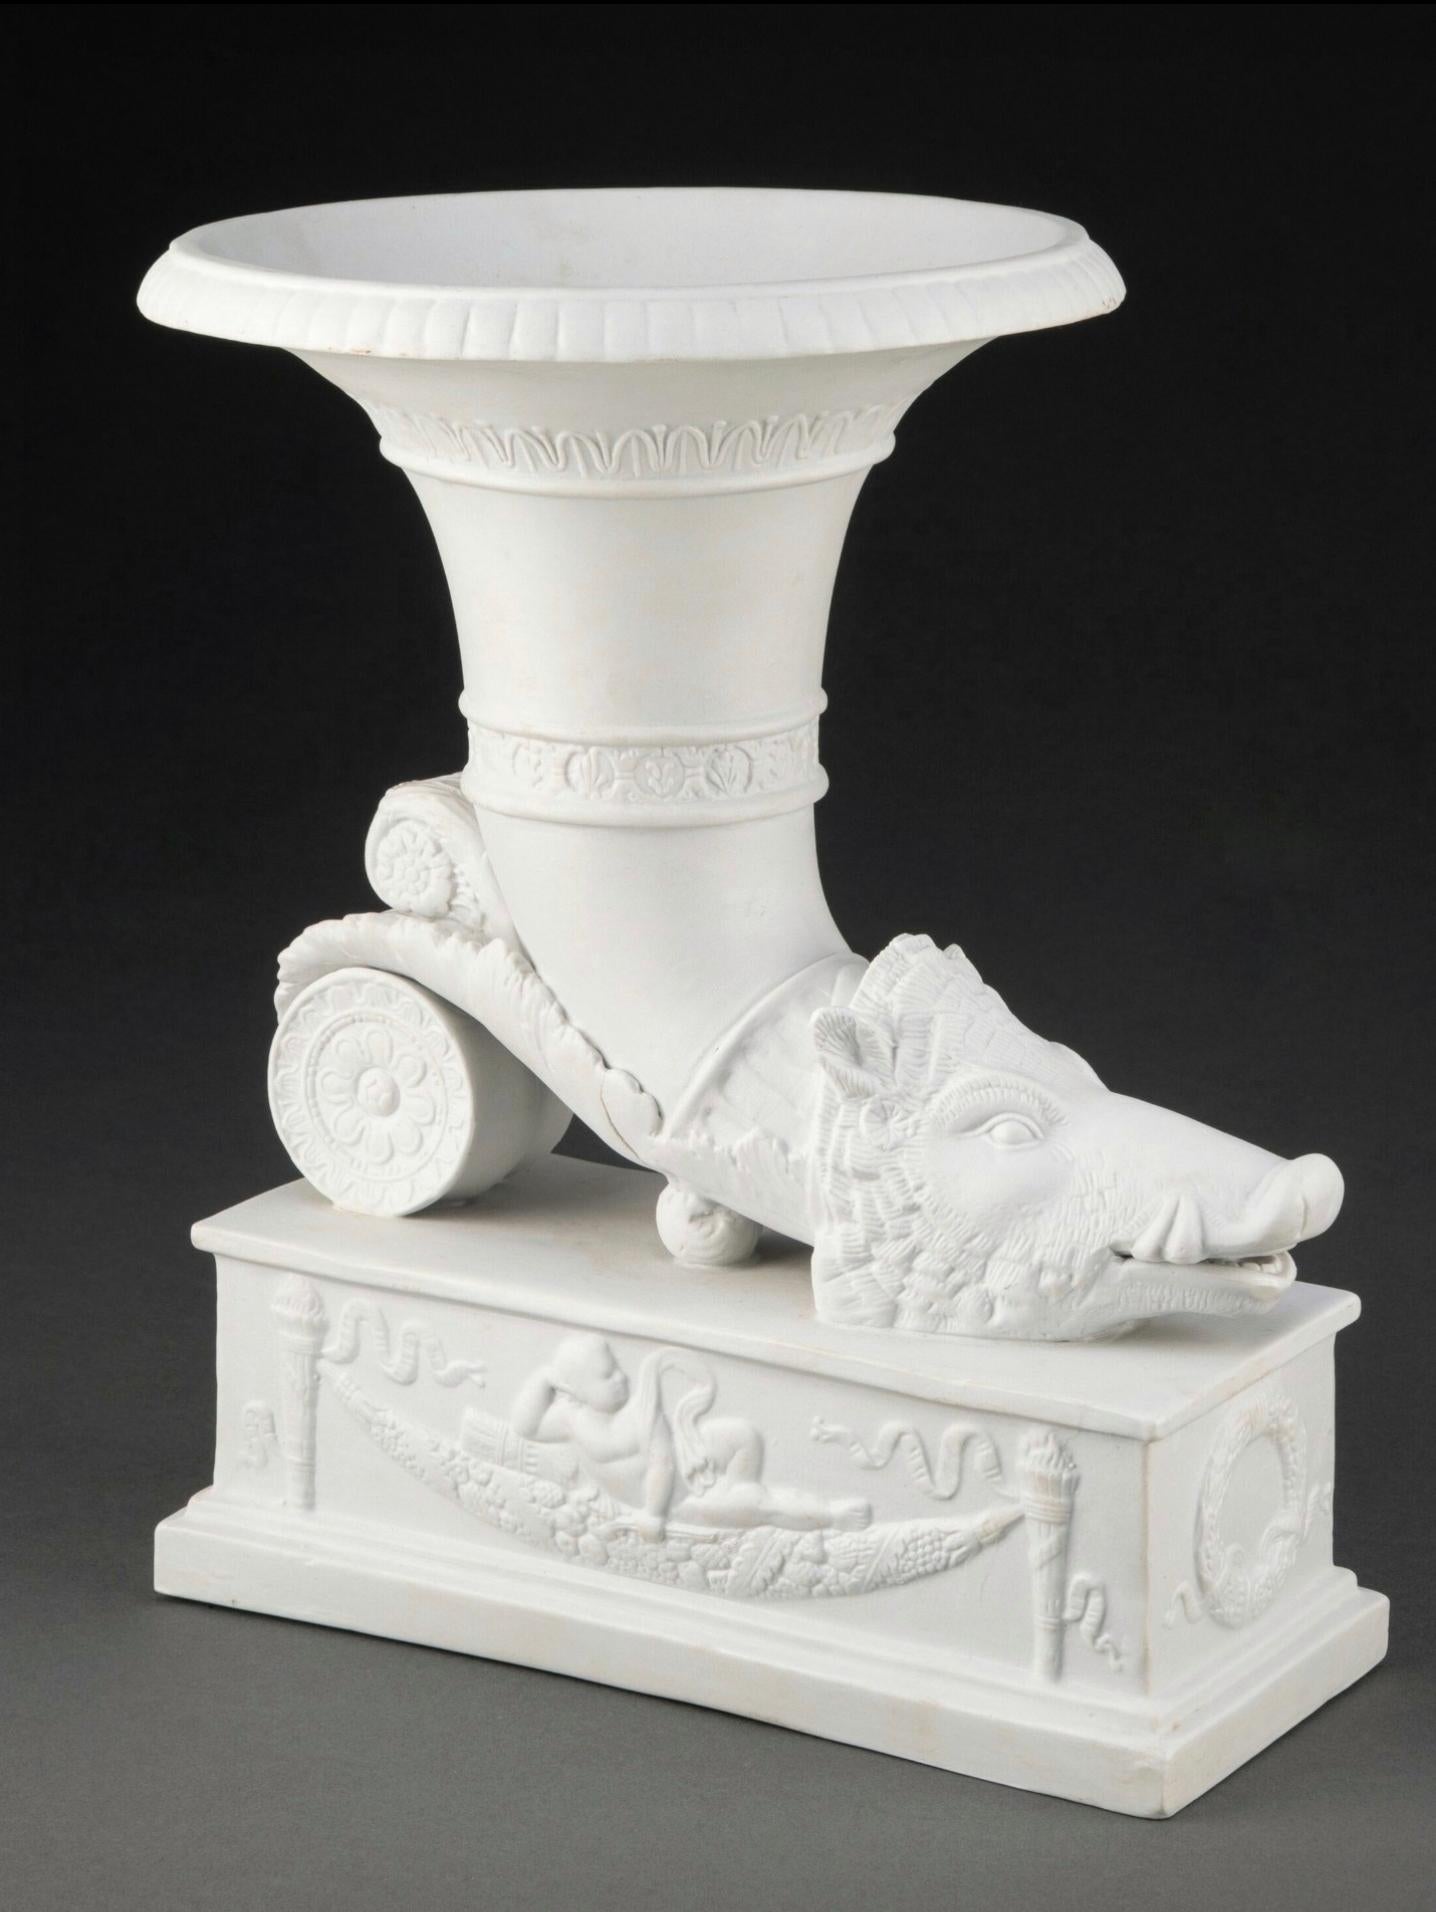 Eine auffällige antike Vase aus Biskuitporzellan in Rhyton-Form im Stil der Grand Tour, um 1875

Kontinentale, wahrscheinlich deutsche, späte 19. Jahrhundert, außergewöhnlich ausgeführte skulpturale Form, die Vase zeigt einen großen, rhytonen